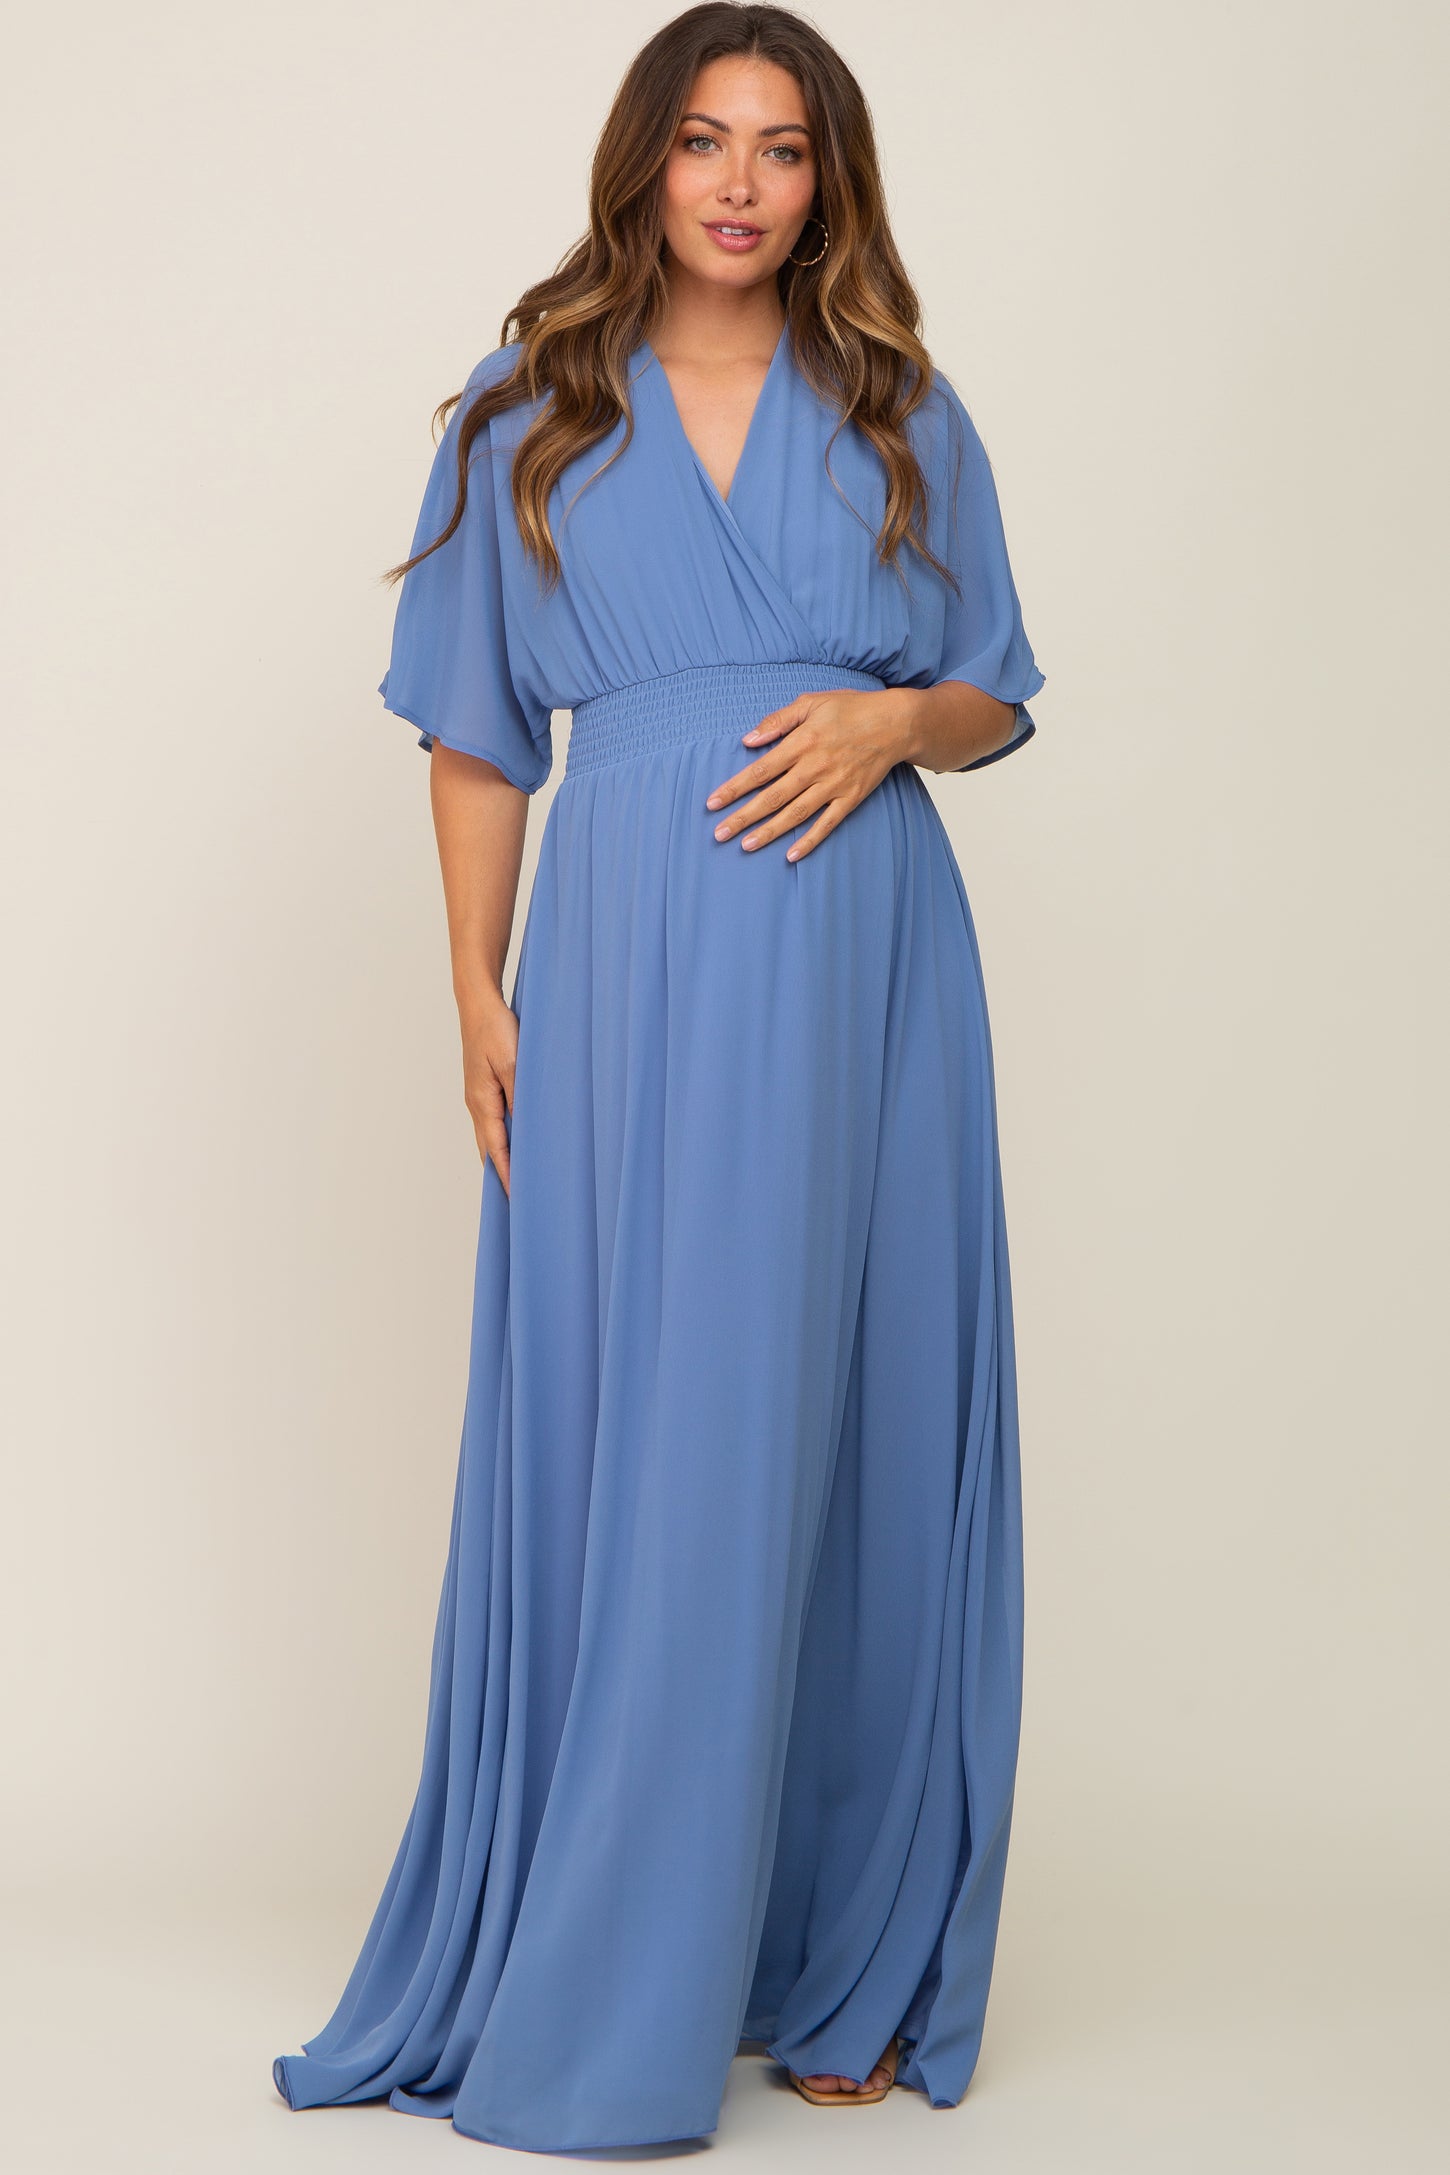 Blue Chiffon V-Neck Smocked Waist Maternity Maxi Dress